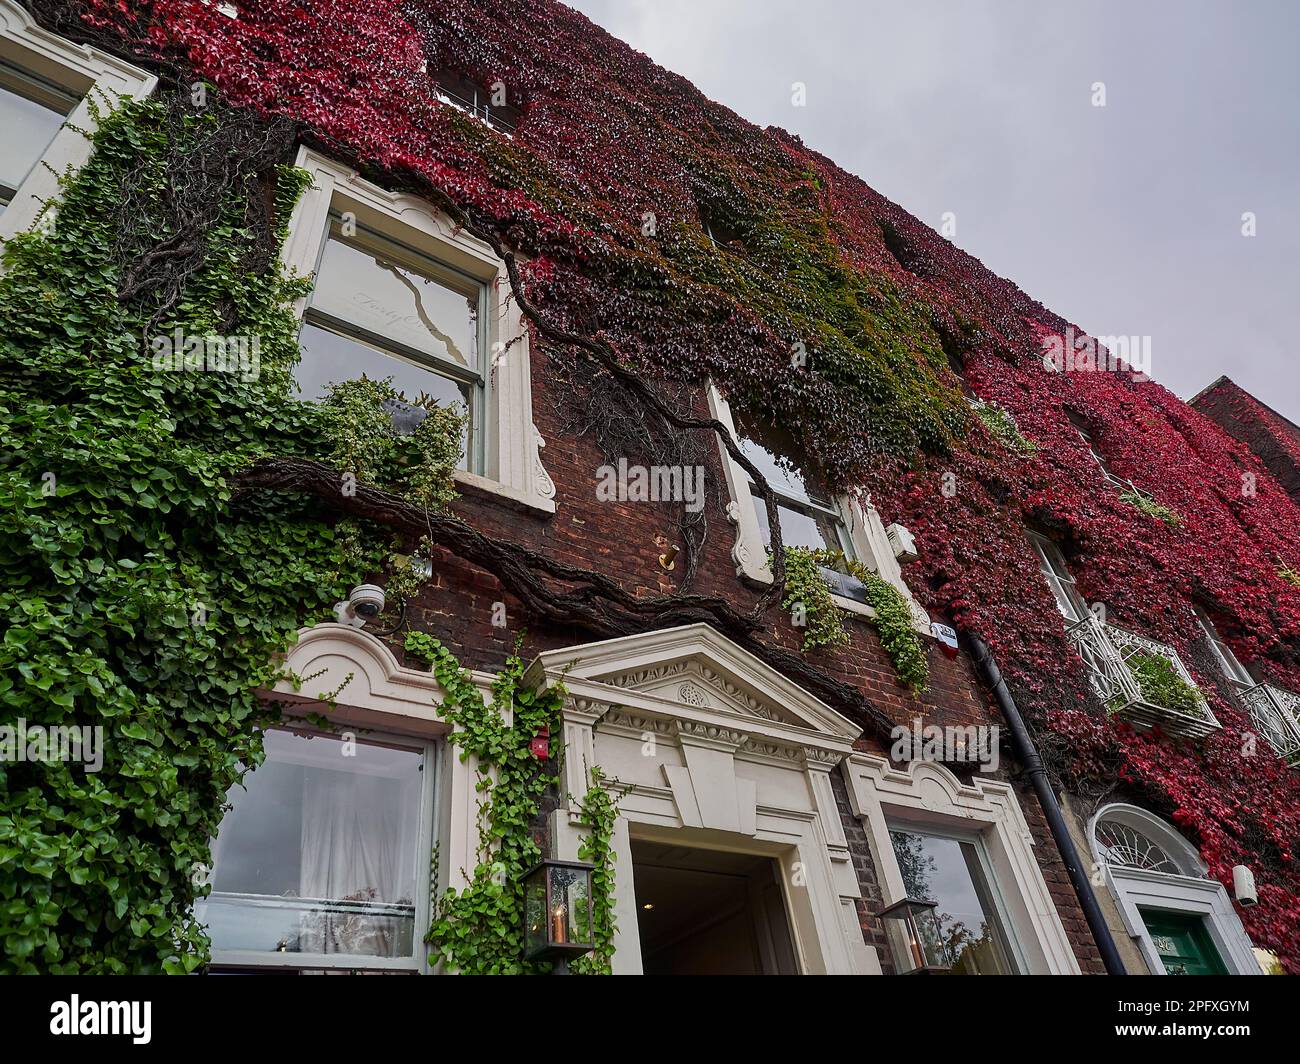 Dublin, Irland - 09 25 2015: Typisches Stadthaus mit überwucherten Mauern von farbenfrohem Efeu in den Straßen von Dublin an einem sonnigen Tag Stockfoto